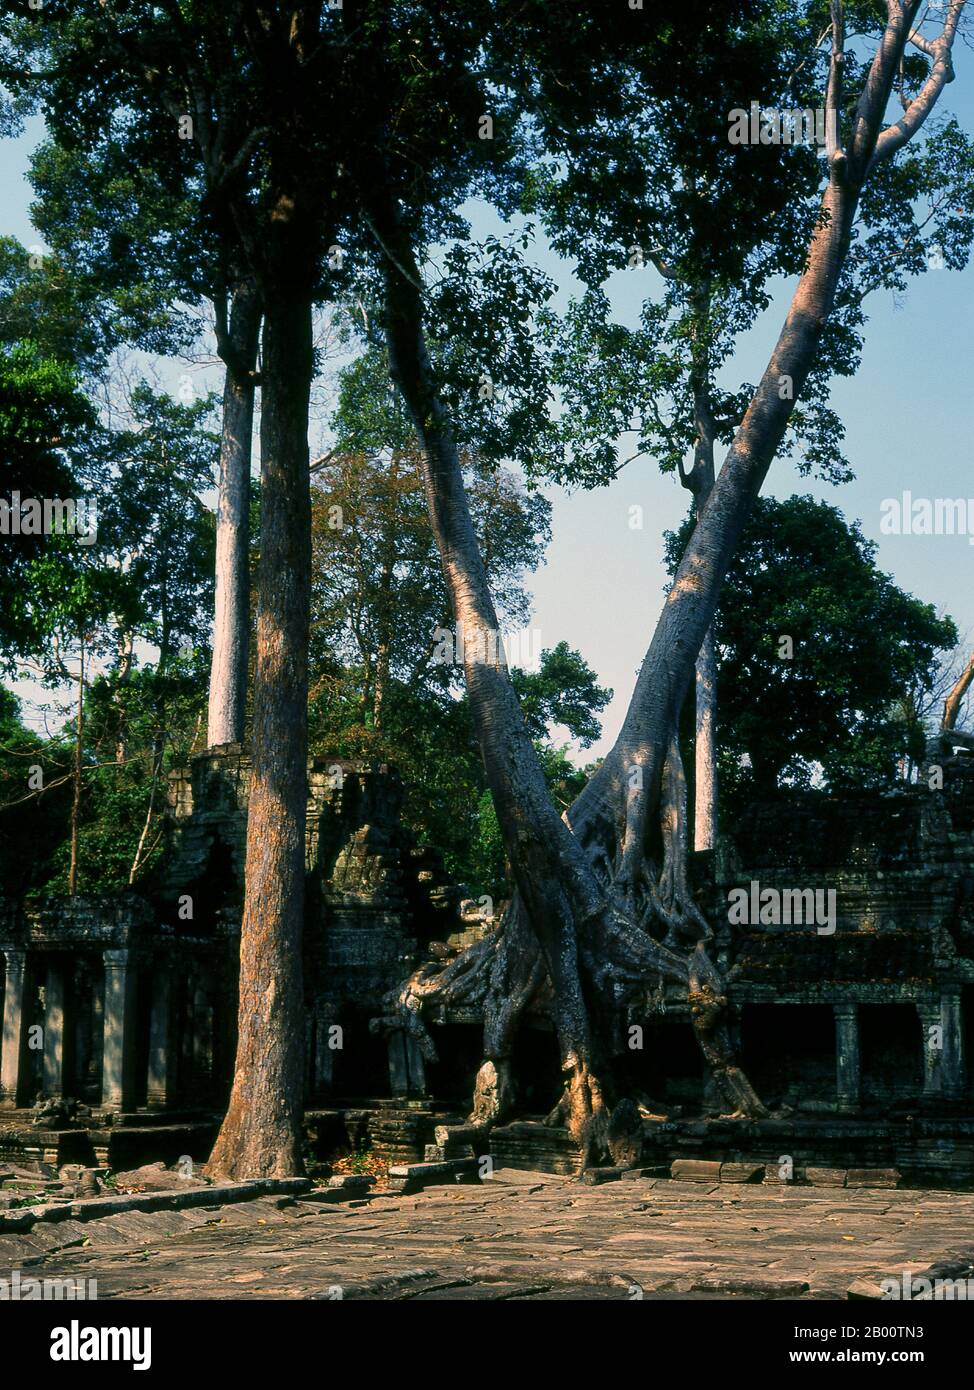 Camboya: Patio de entrada oriental, Preah Khan, Angkor. Preah Khan (Templo de la Espada Sagrada) fue construido a finales del siglo 12 (1191) por Jayavarman VII y se encuentra justo al norte de Angkor Thom. El templo fue construido en el sitio de la victoria de Jayavarman VII sobre los Chams invasores en 1191. Fue el centro de una organización sustancial, con casi 100,000 funcionarios y empleados. Sirvió como universidad budista en un momento. La deidad primaria del templo es el boddhisatva Avalokiteshvara en la forma del padre de Jayavarman. Foto de stock